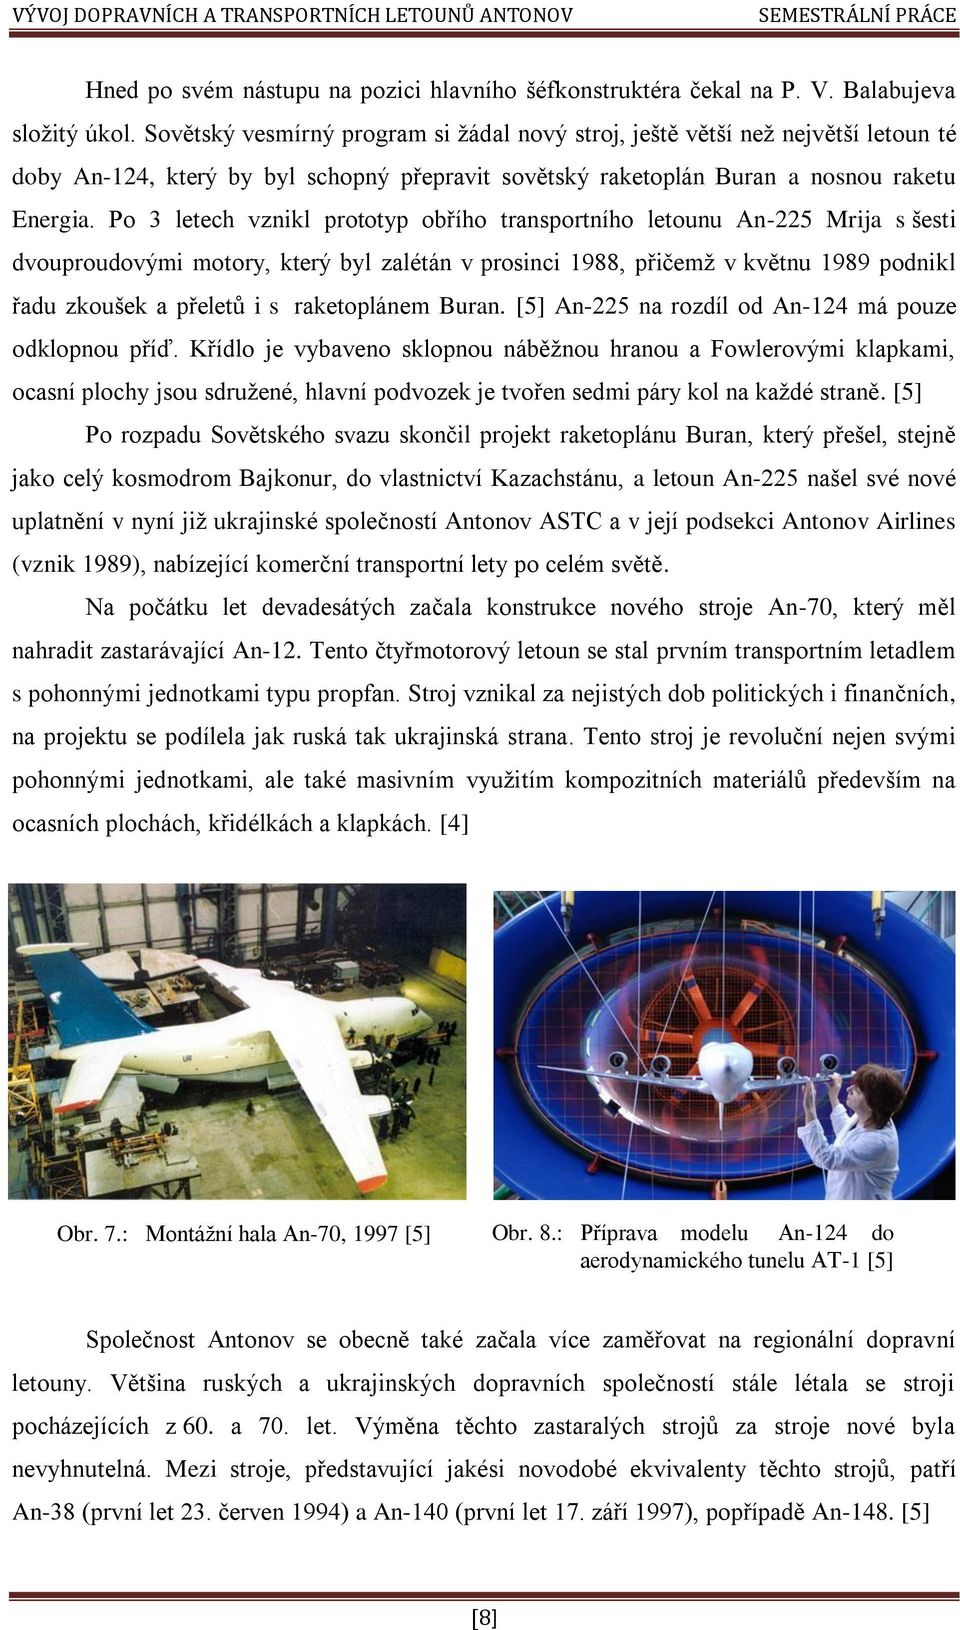 Po 3 letech vznikl prototyp obřího transportního letounu An-225 Mrija s šesti dvouproudovými motory, který byl zalétán v prosinci 1988, přičemž v květnu 1989 podnikl řadu zkoušek a přeletů i s